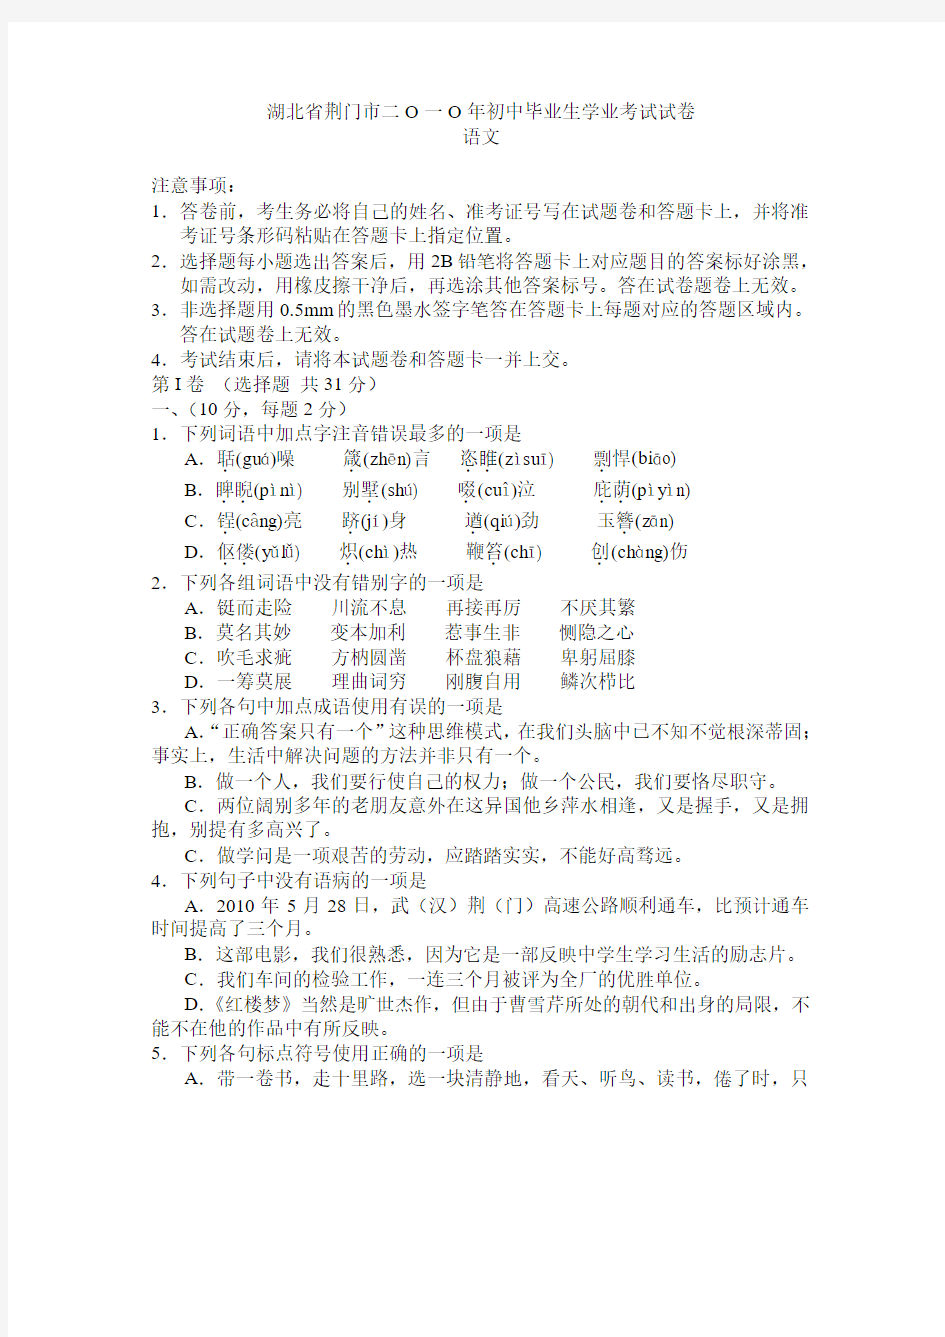 湖北 荆门--2010年中考语文试题120套余映潮收集整理